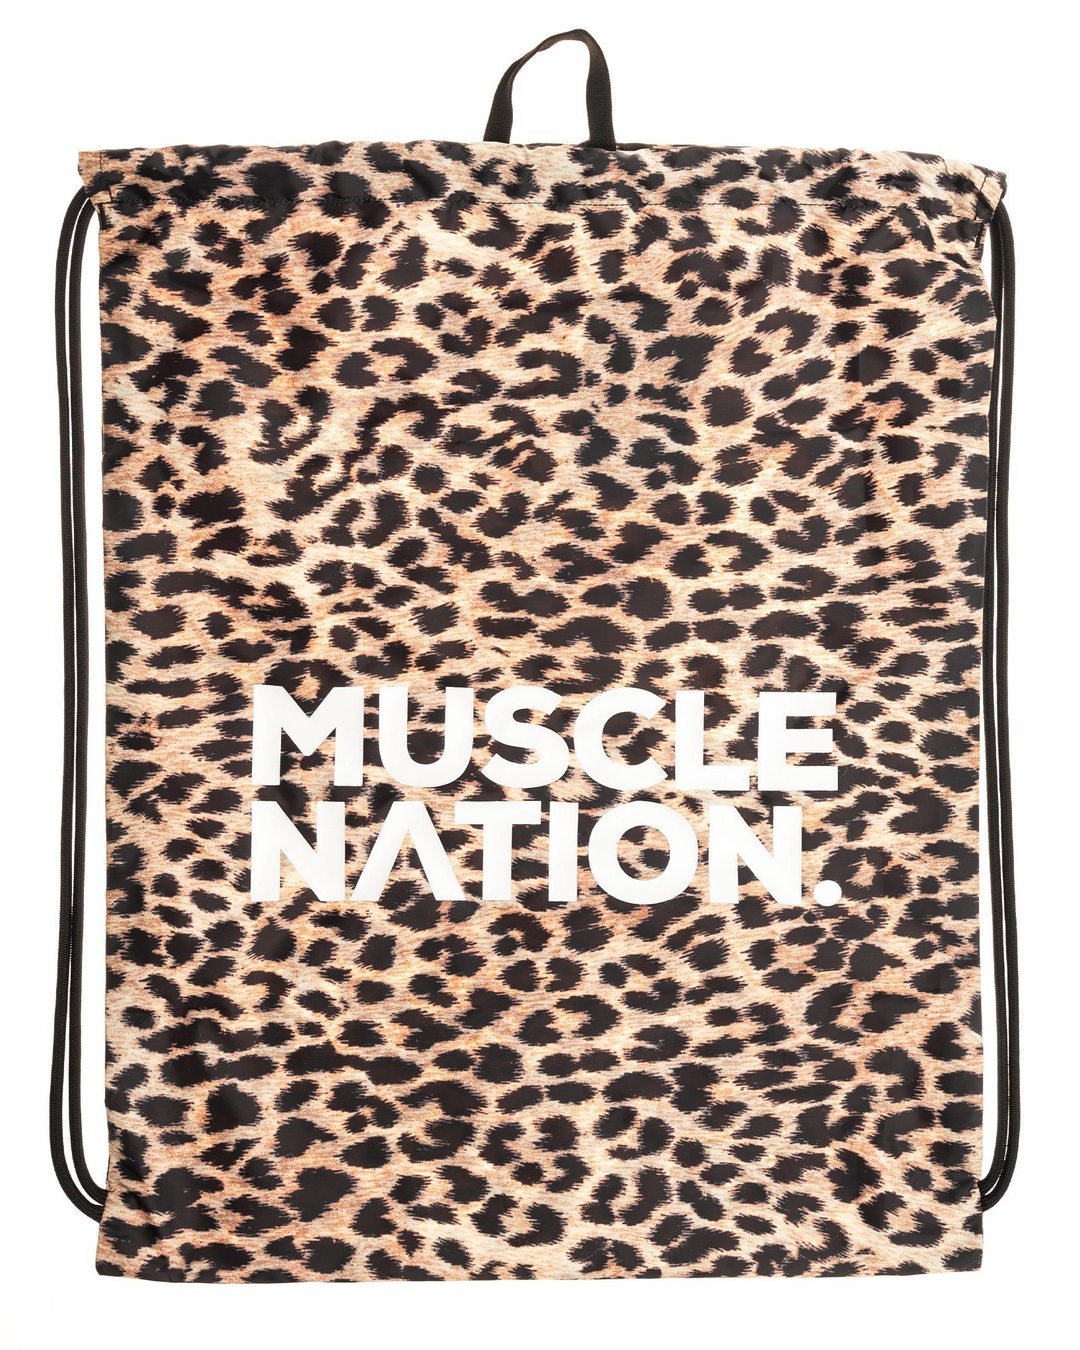 musclenation Default String Bag -